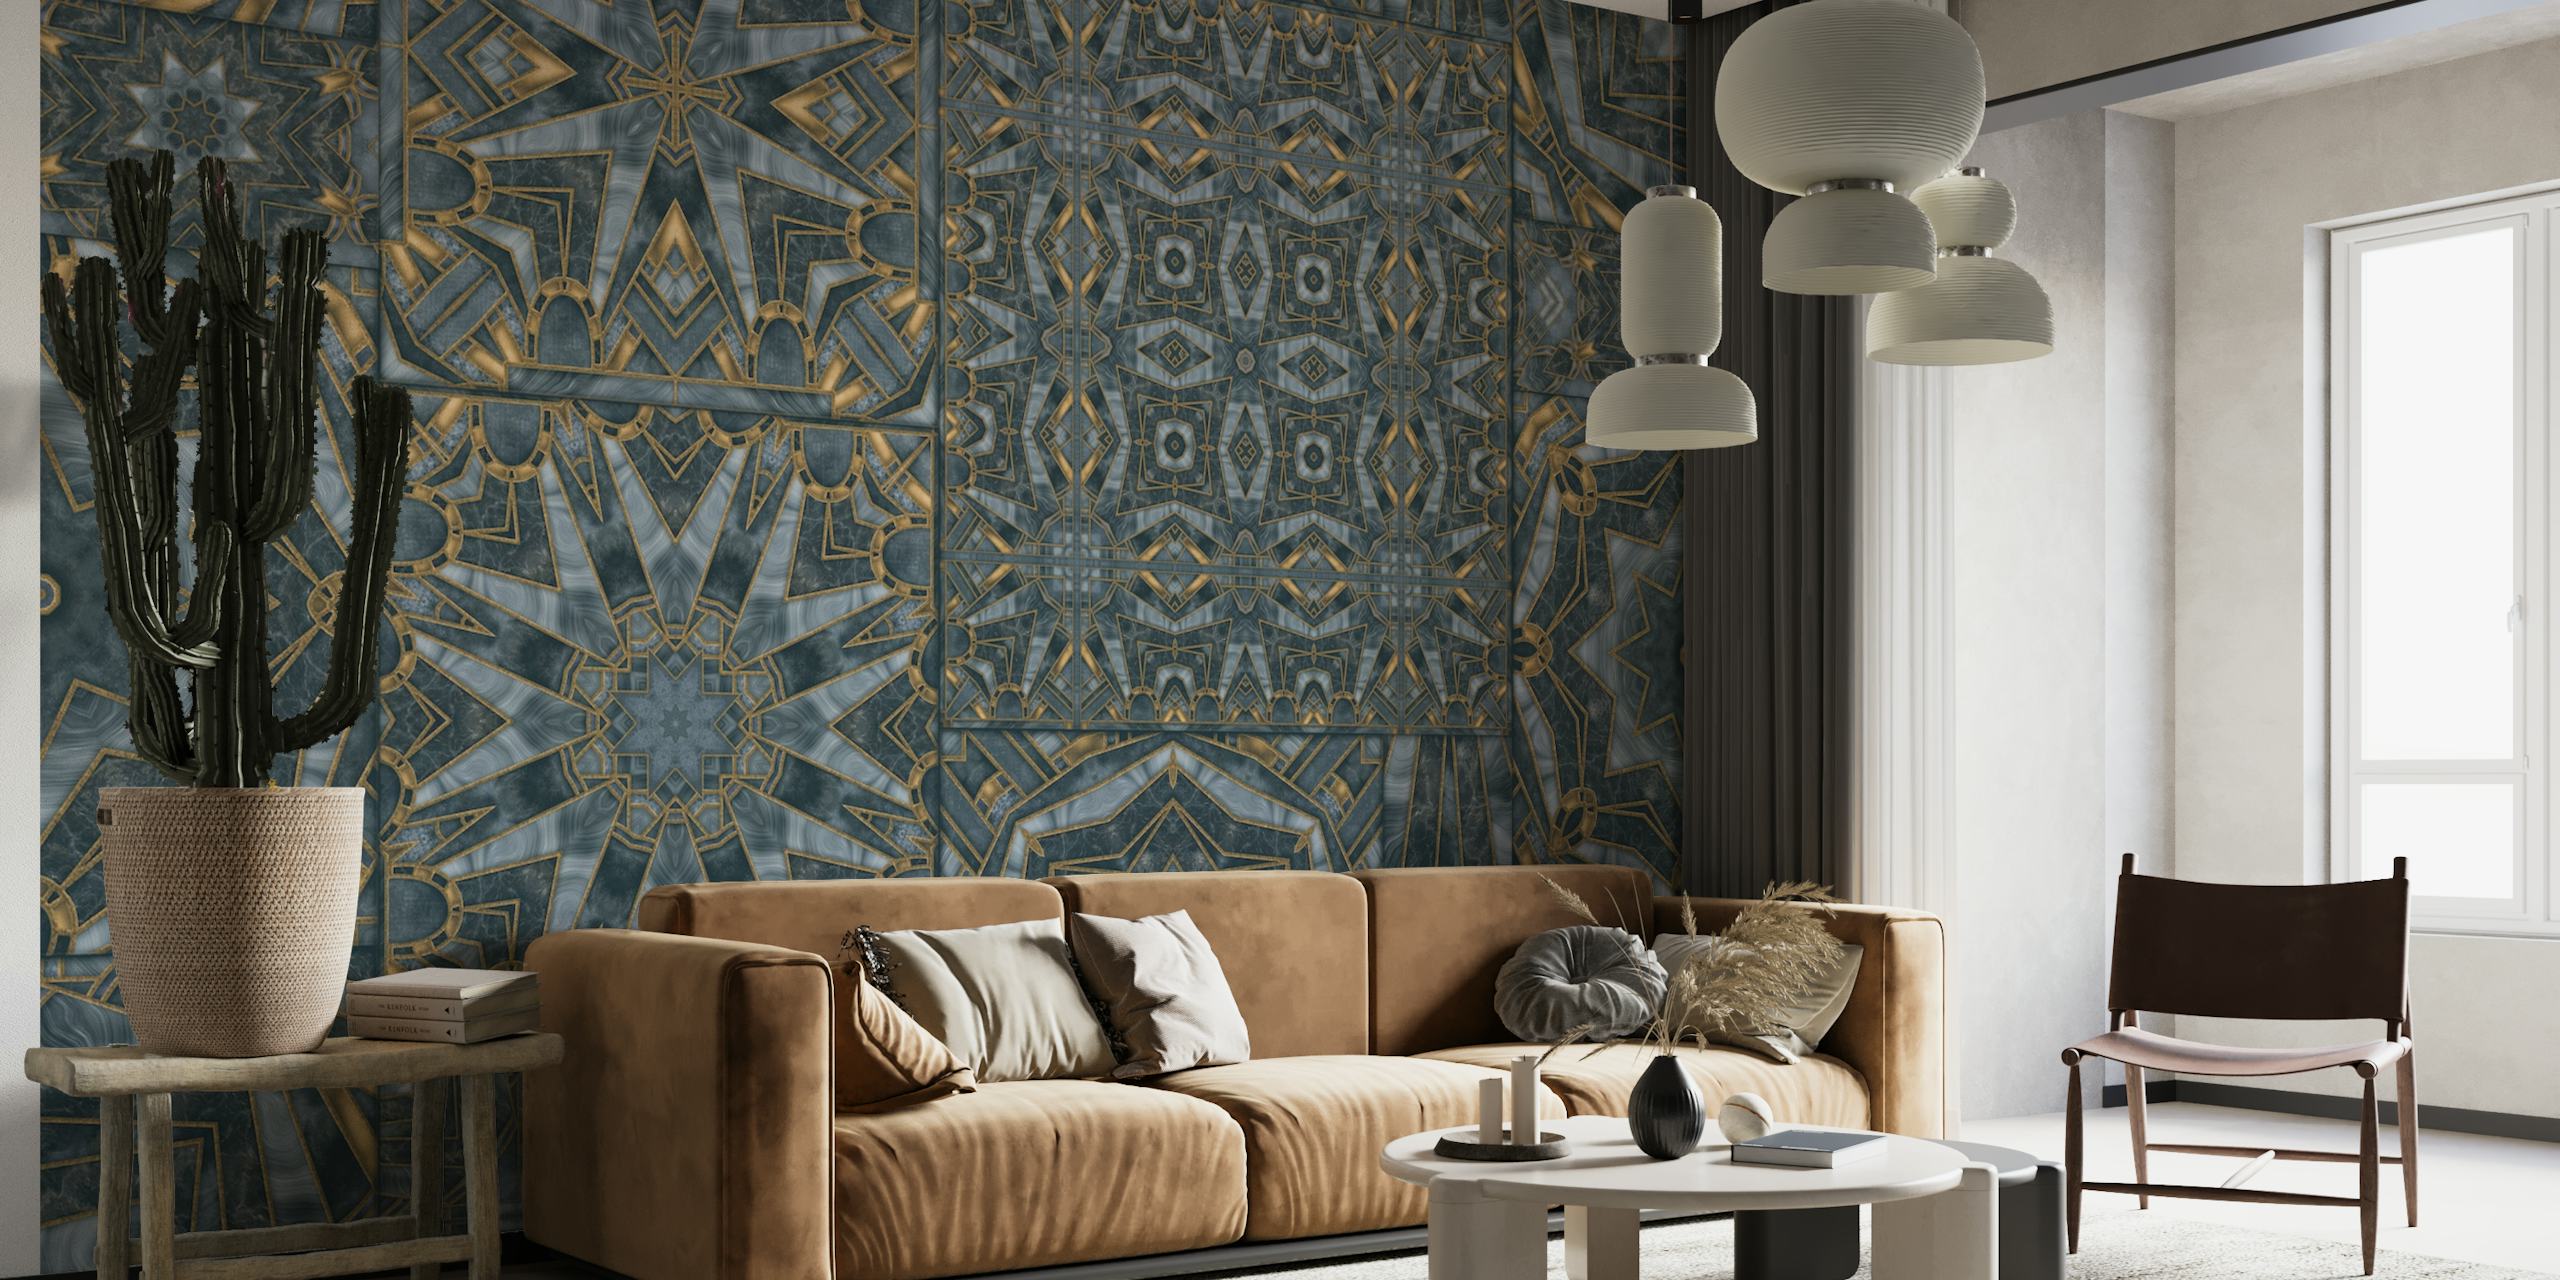 Art Deco meets Morocco Tiles papel pintado